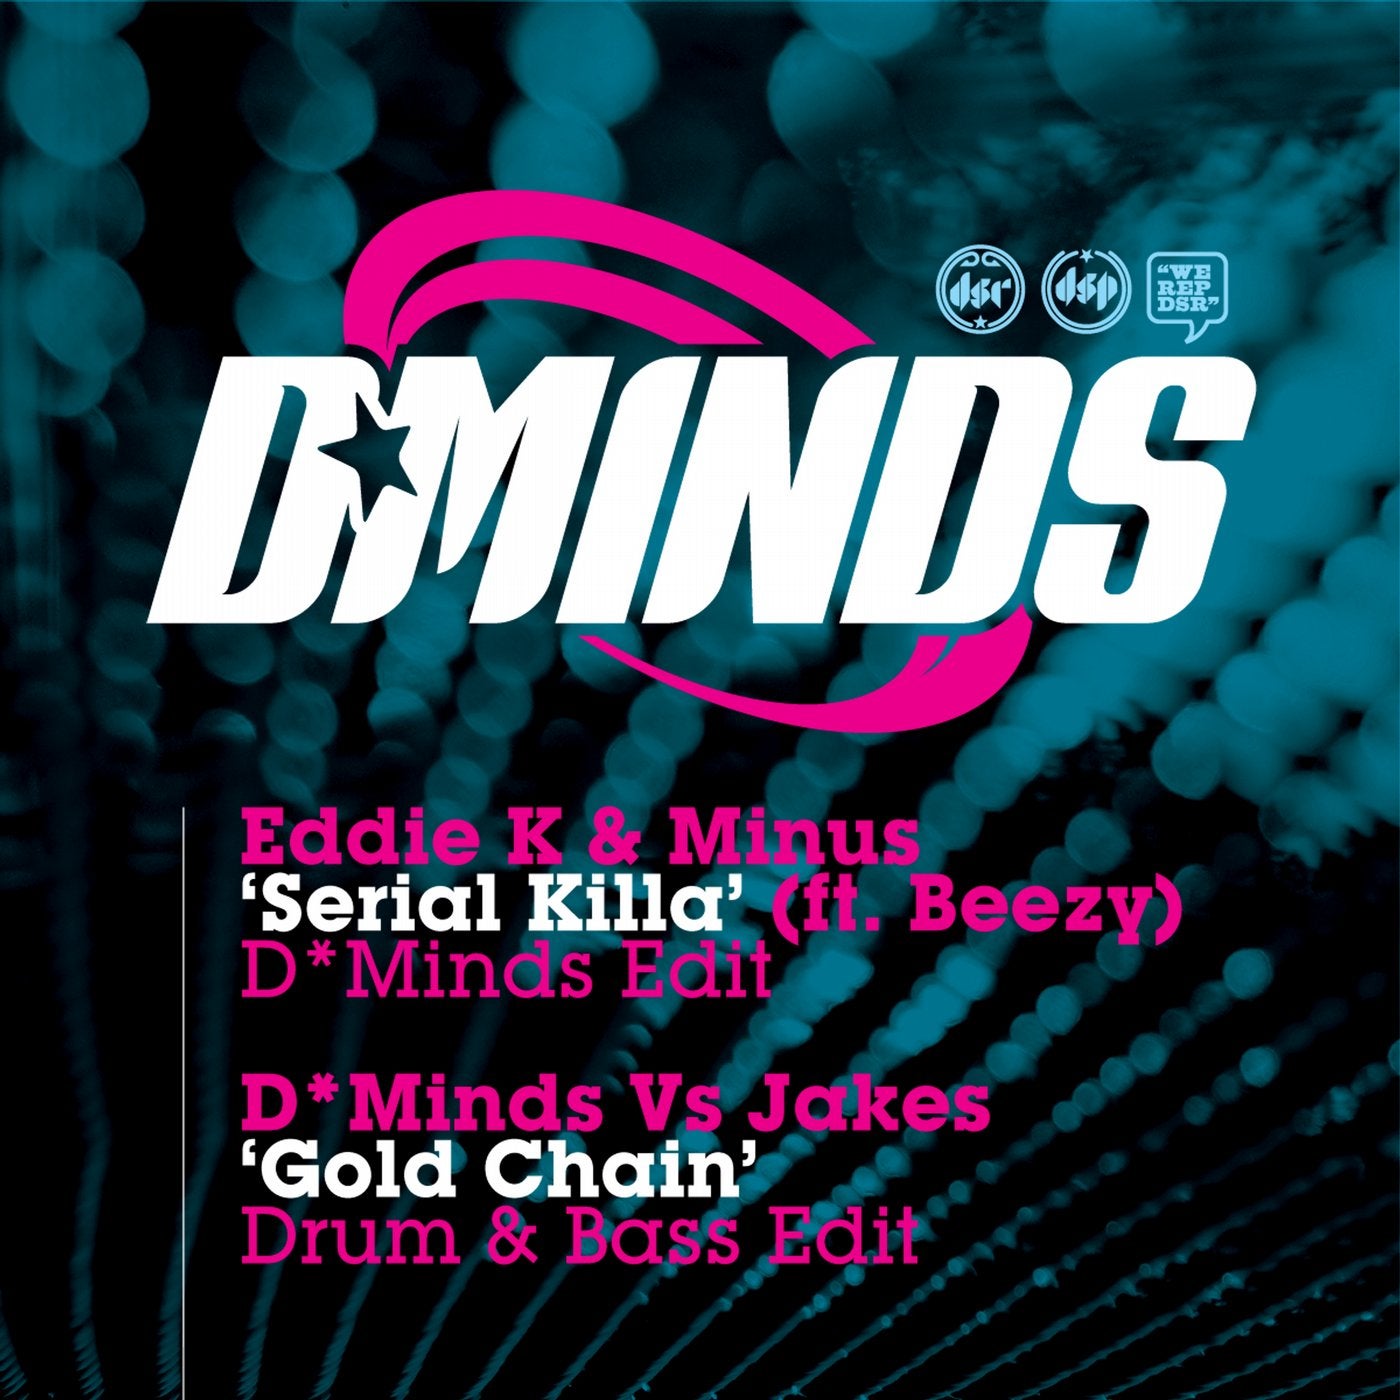 Serial Killer (D*Minds Remix) / Gold Chain (Drum & Bass Edit)